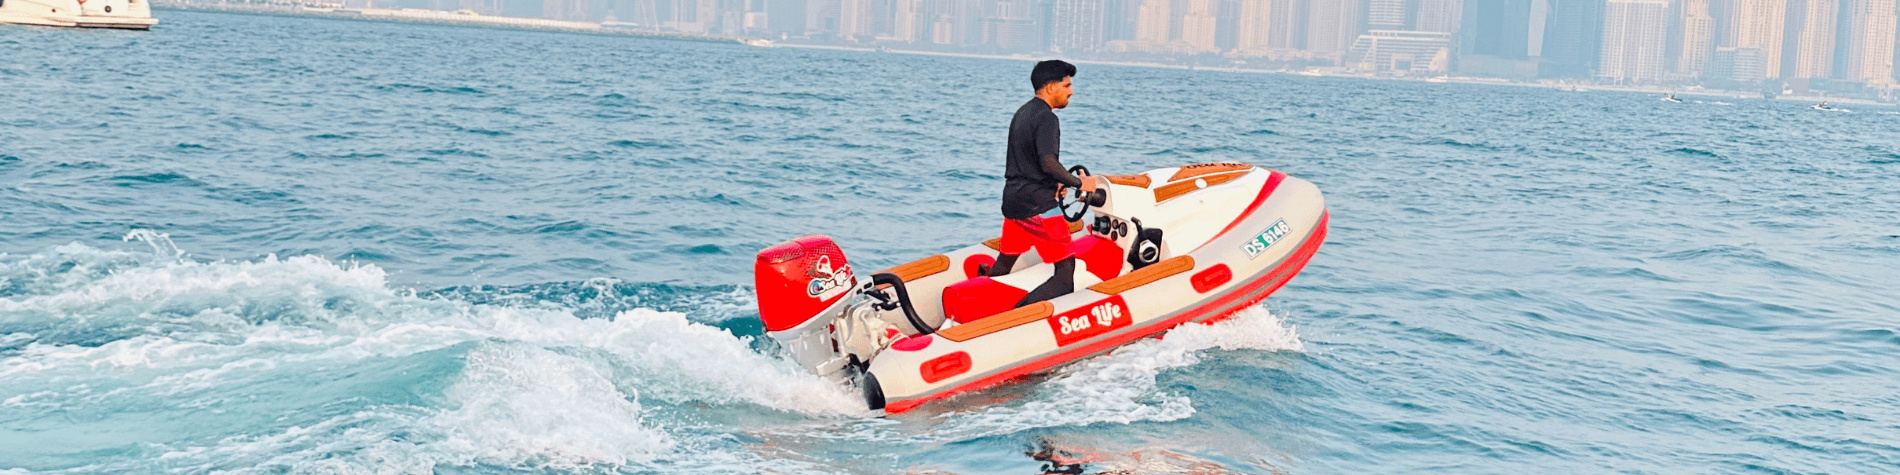 Self Drive Boat Rental in Dubai - sealifedubai.com